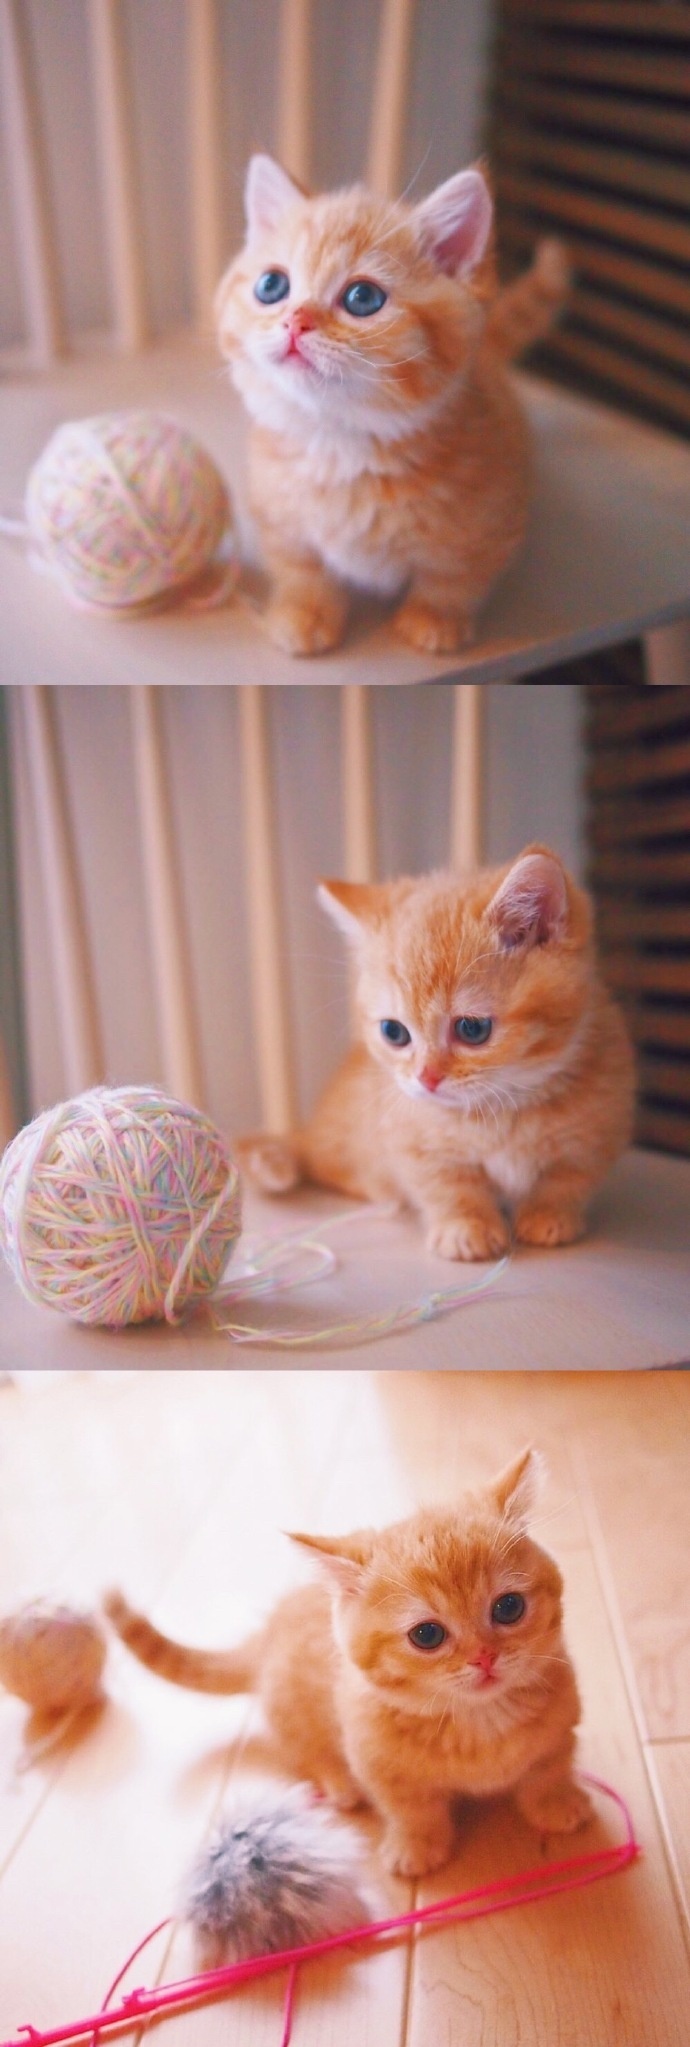 猫的图片可爱 很萌的橘猫图片(9)